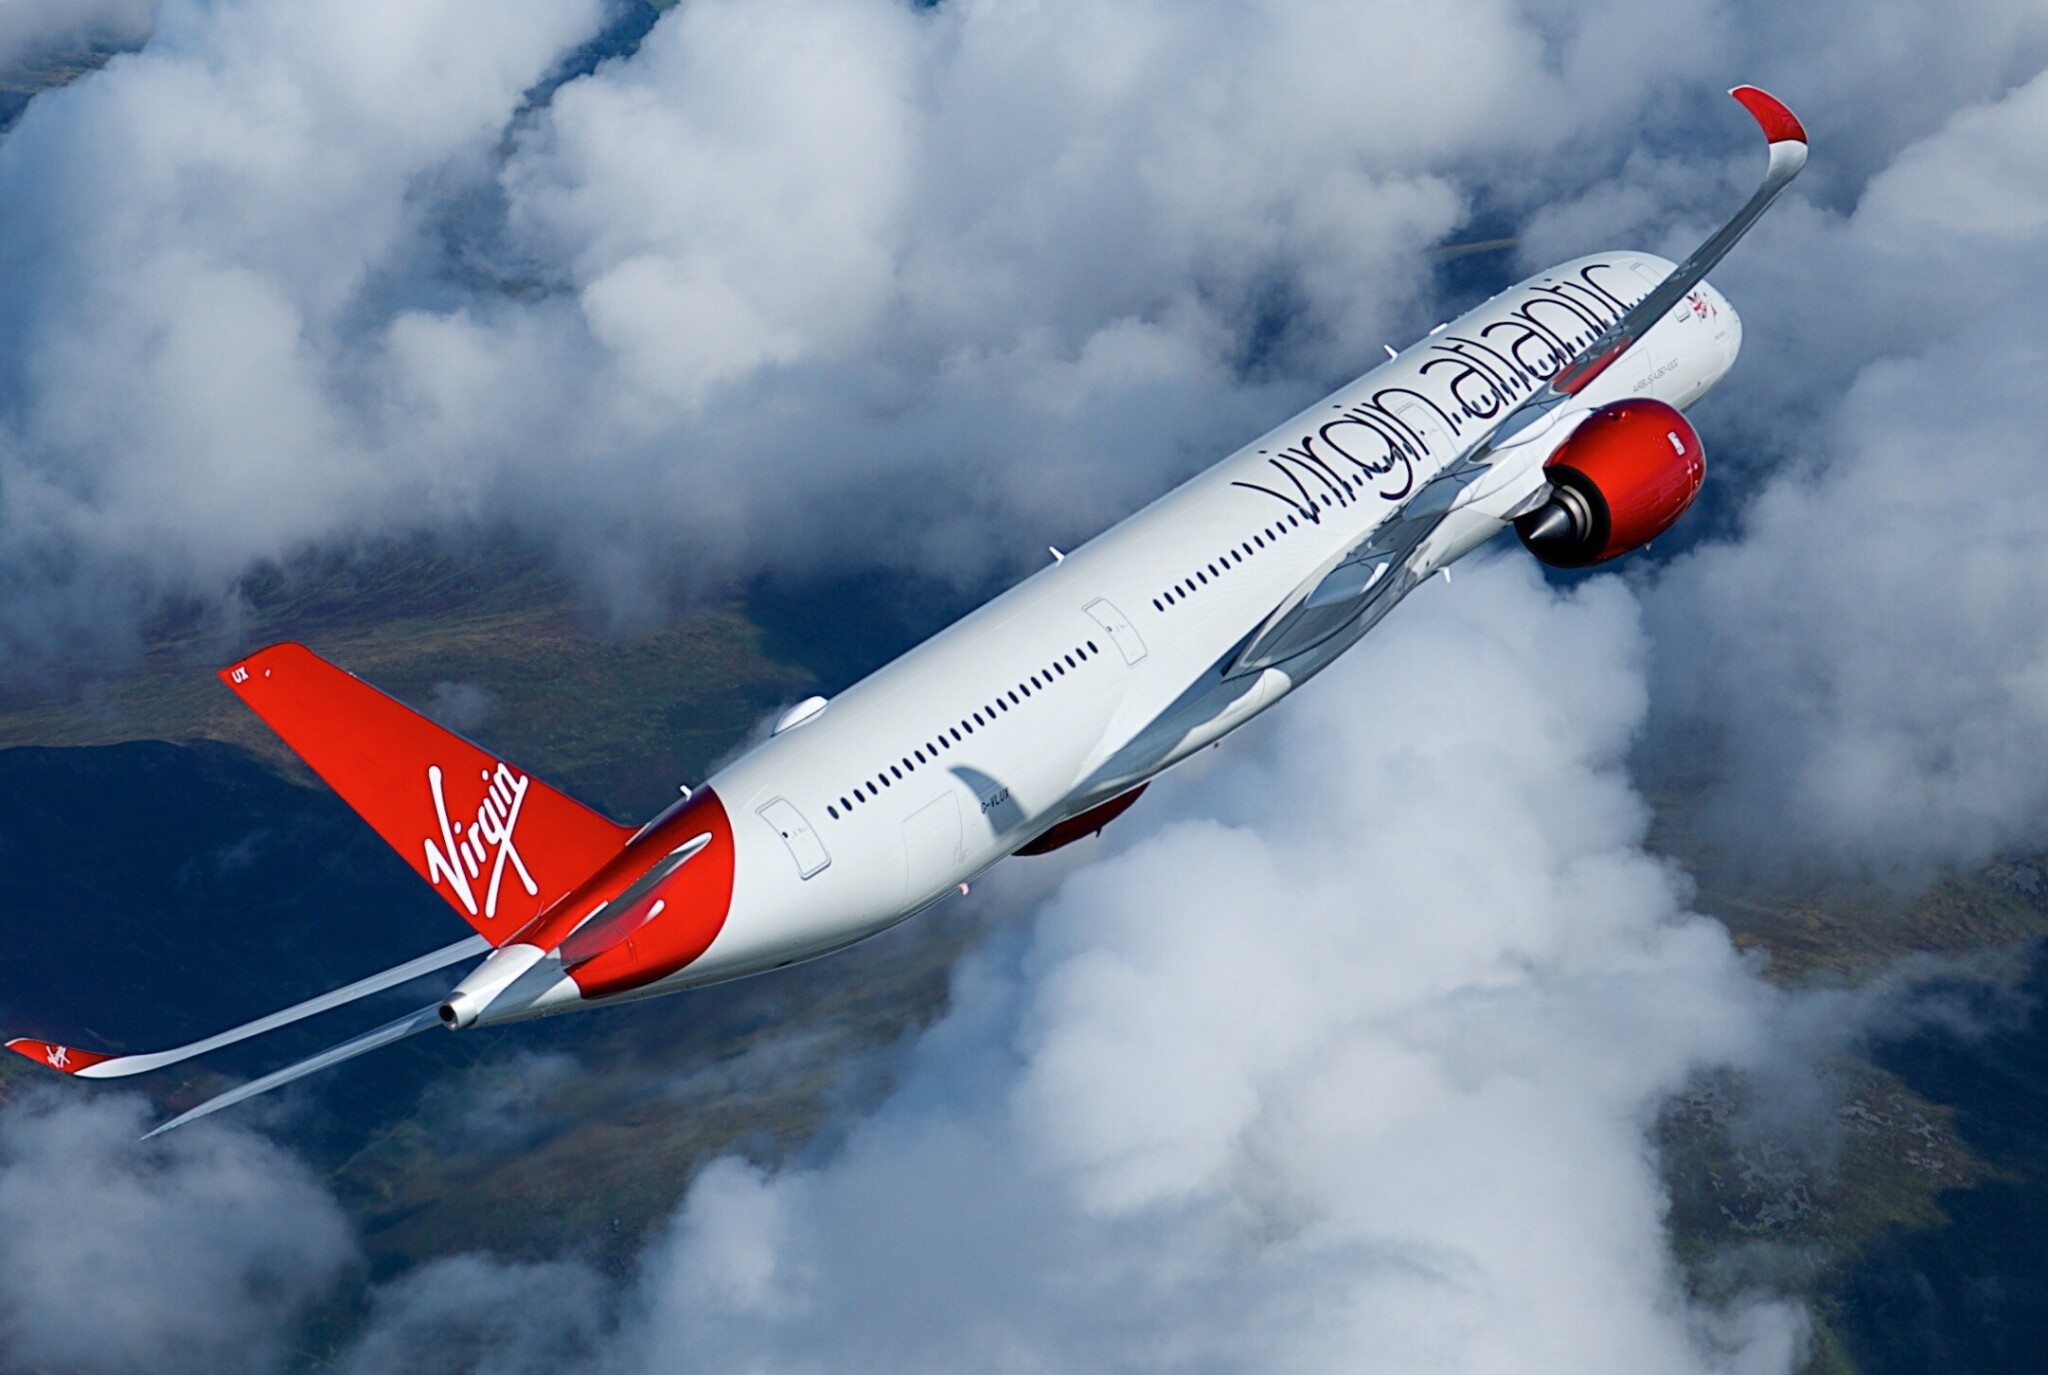 První let přes Atlantik s udržitelným palivem. Uskuteční ho Virgin Atlantic